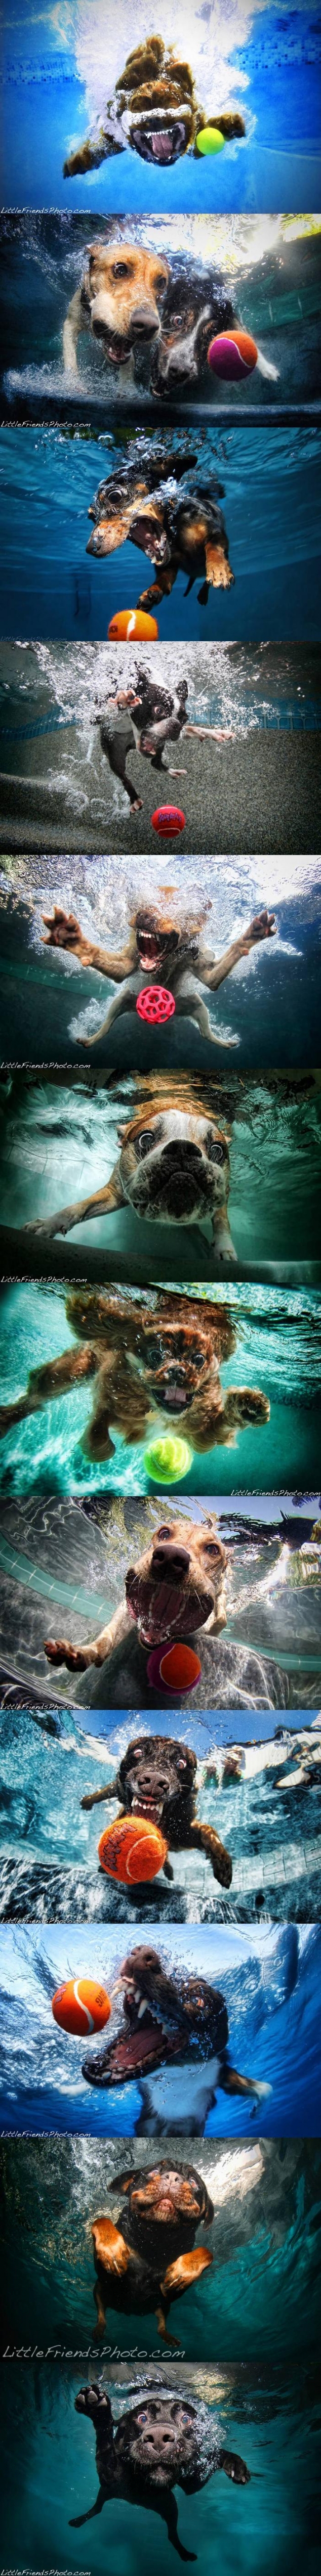 Underwater Dog Fun